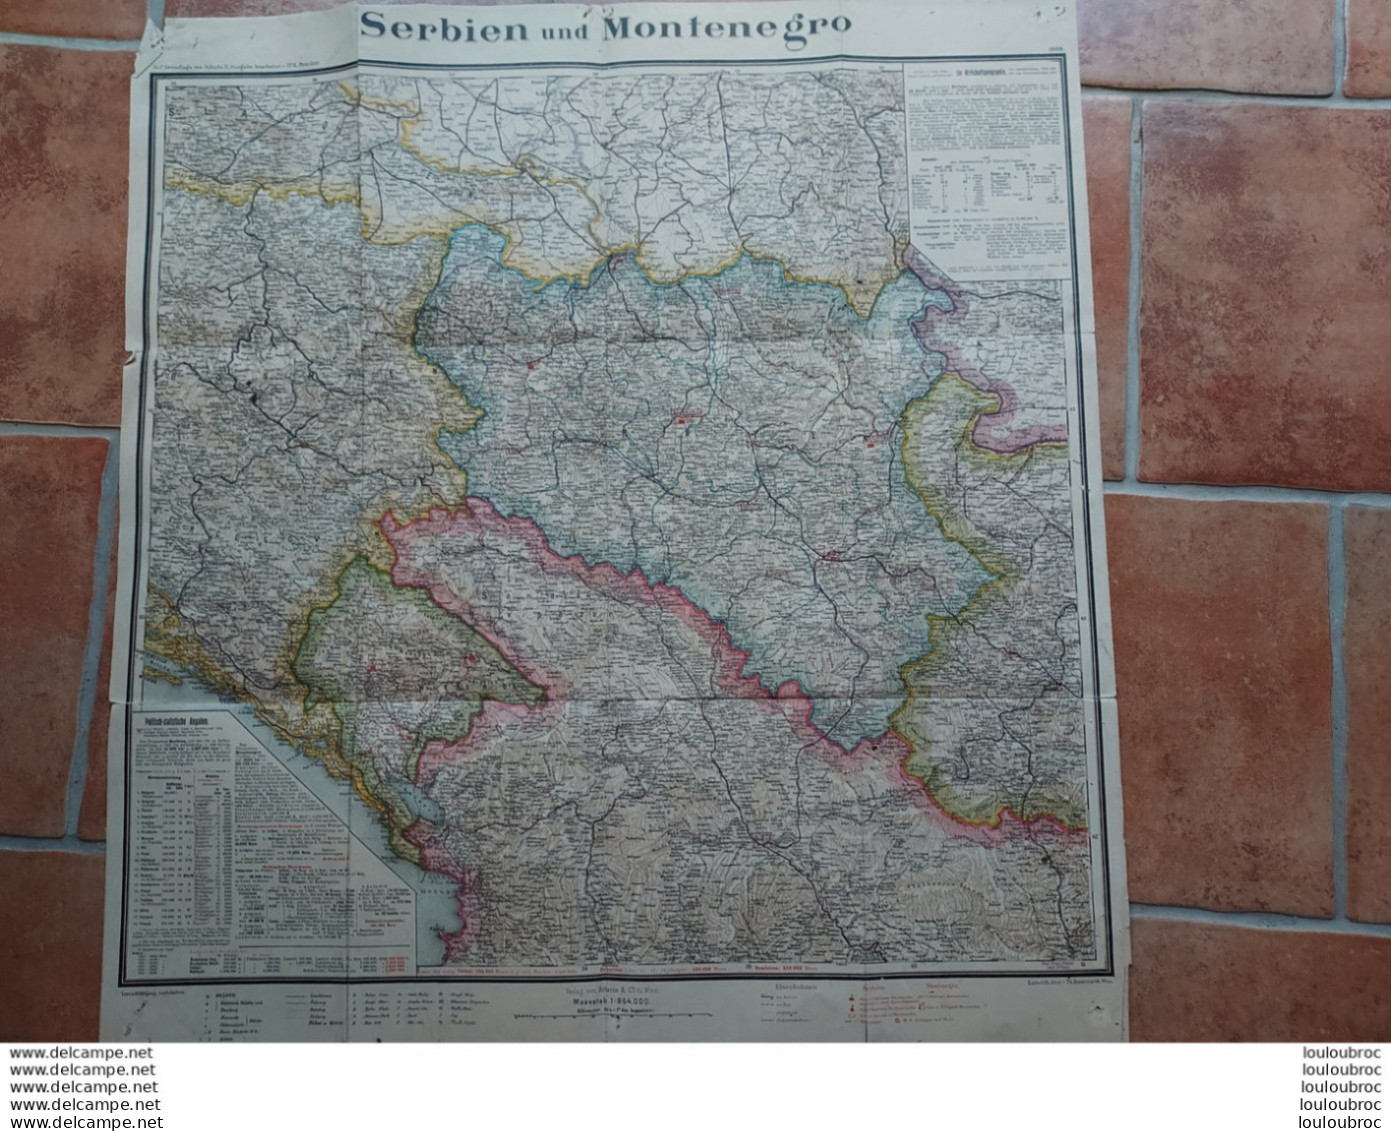 CARTE GEOGRAPHIQUE SERBIE MONTENEGRO 1909  FORMAT 65 X 61 CM - Cartes Géographiques